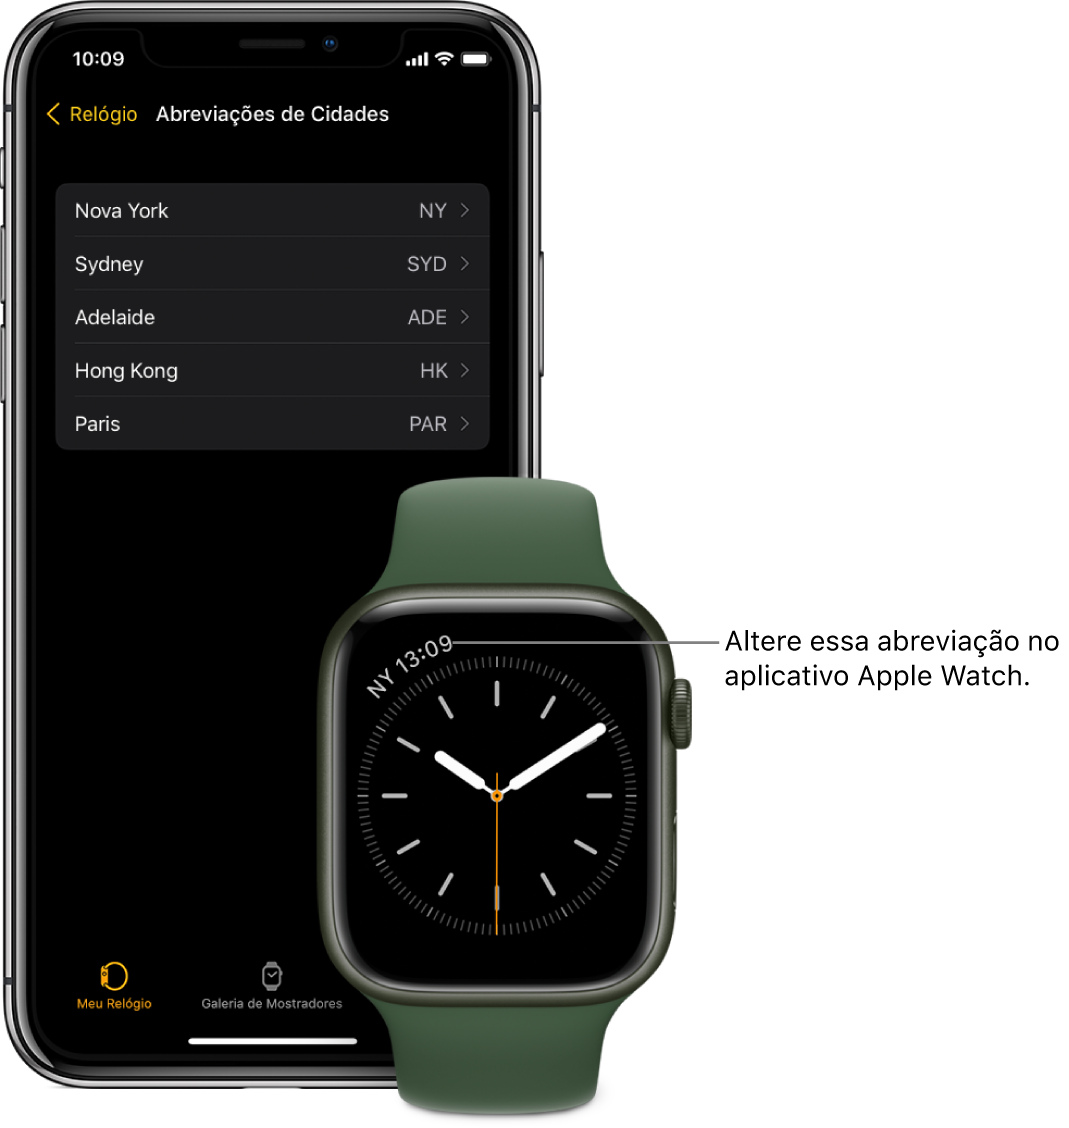 Um iPhone e um Apple Watch lado a lado. A tela do Apple Watch mostra a hora em Nova Iorque, com a abreviação NYC. A tela do iPhone mostra a lista de cidades nos ajustes de Abreviações de Cidades, nos ajustes do Relógio, no app Apple Watch.